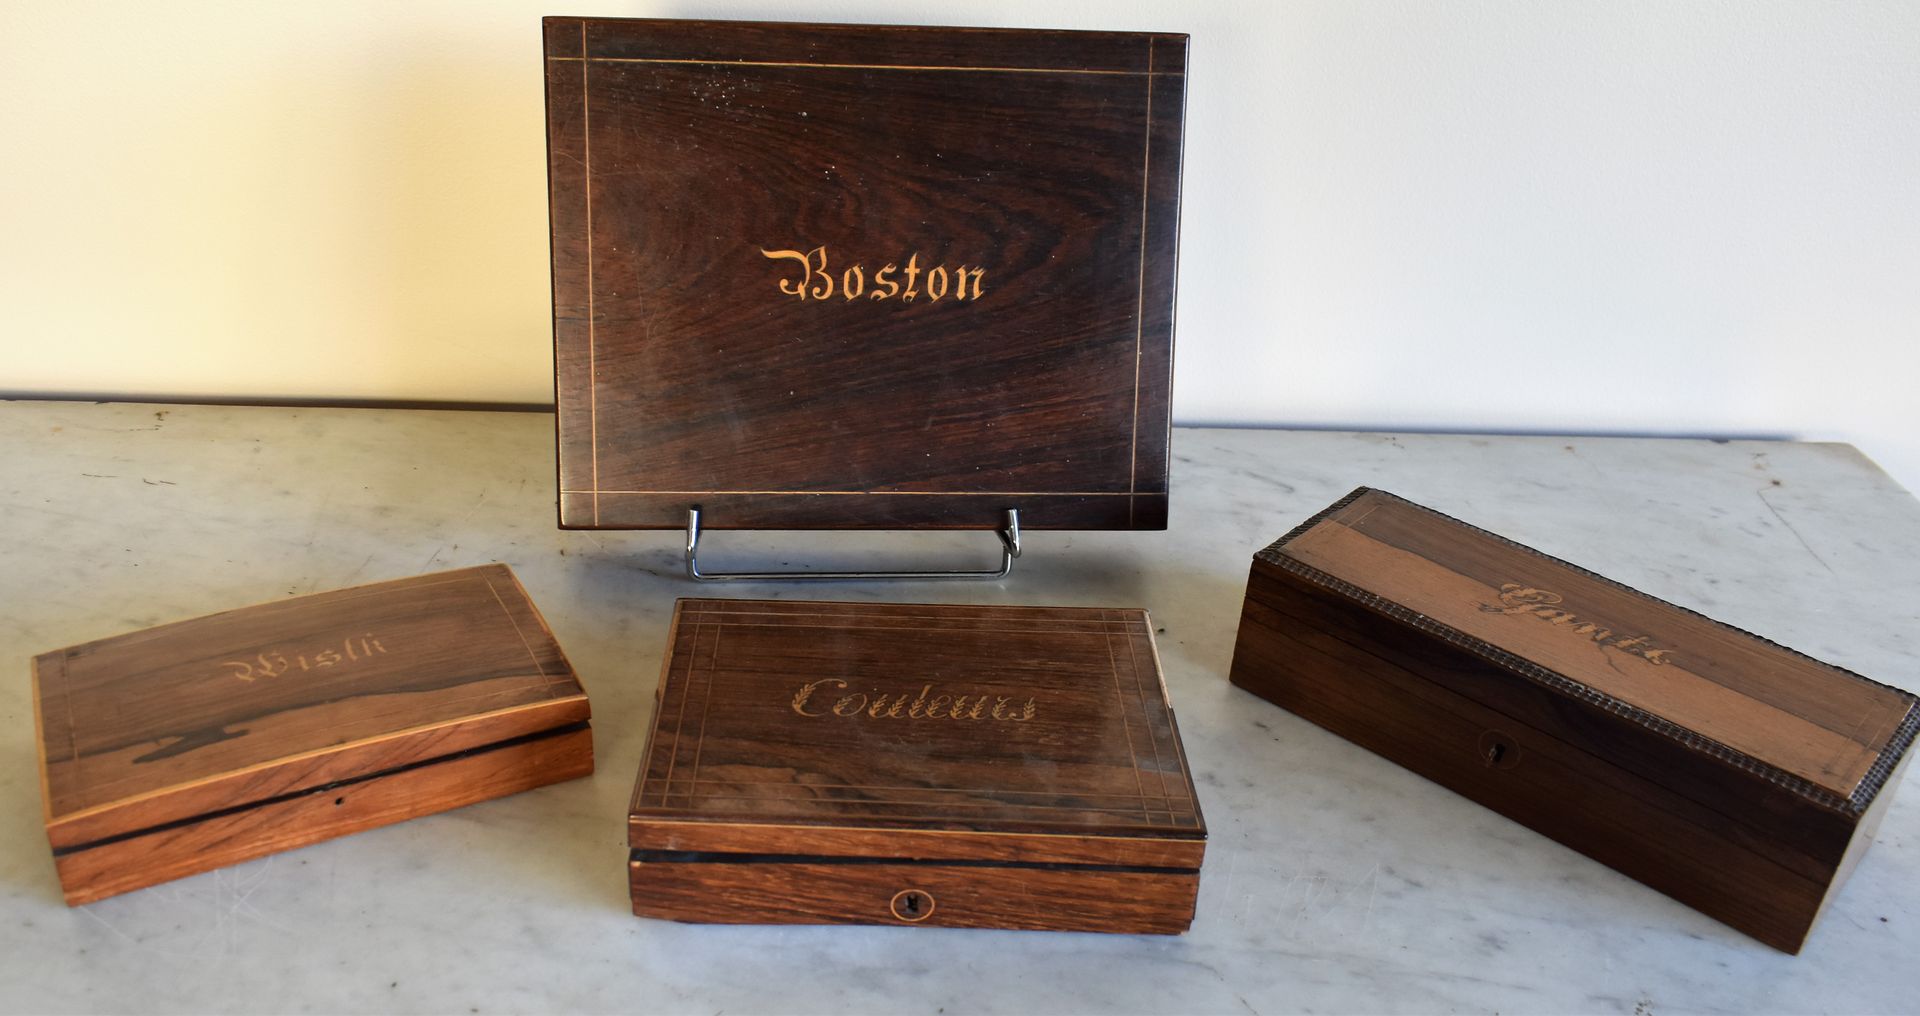 Null 四个不同的盒子，其中两个是游戏盒（波士顿，惠斯特），手套和颜色。浪漫主义时期。